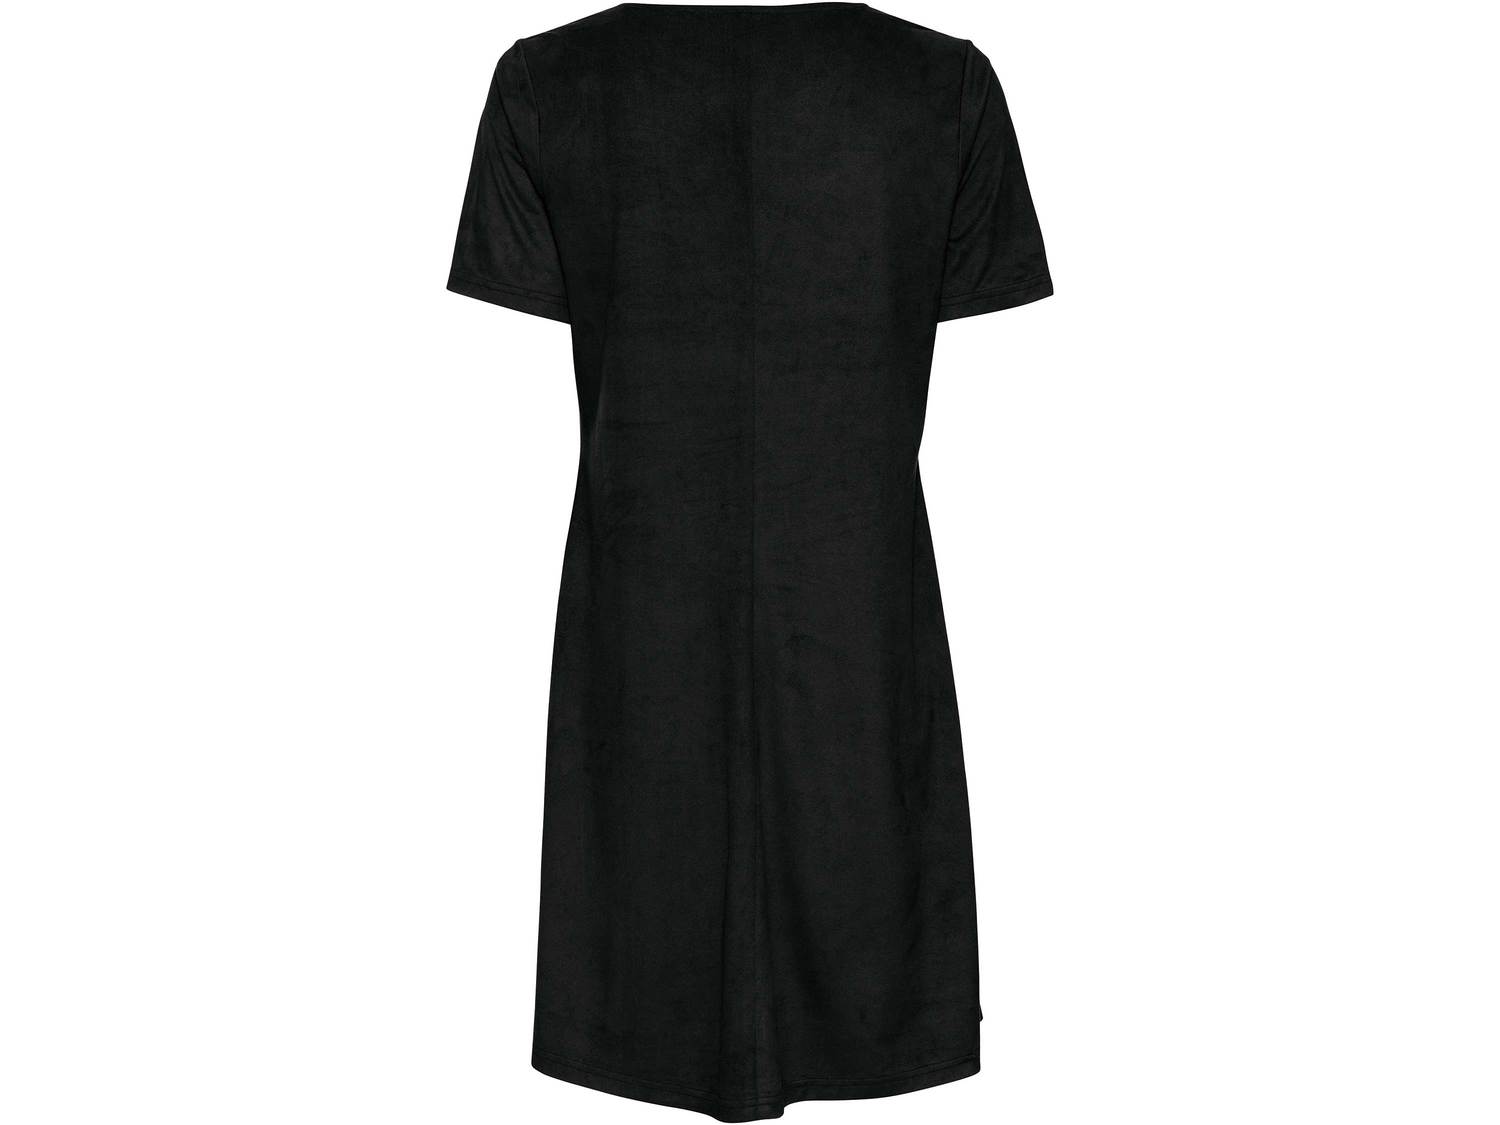 Sukienka Esmara, cena 39,99 PLN 
- wygląd sk&oacute;ry welurowej
- rozmiary: ...